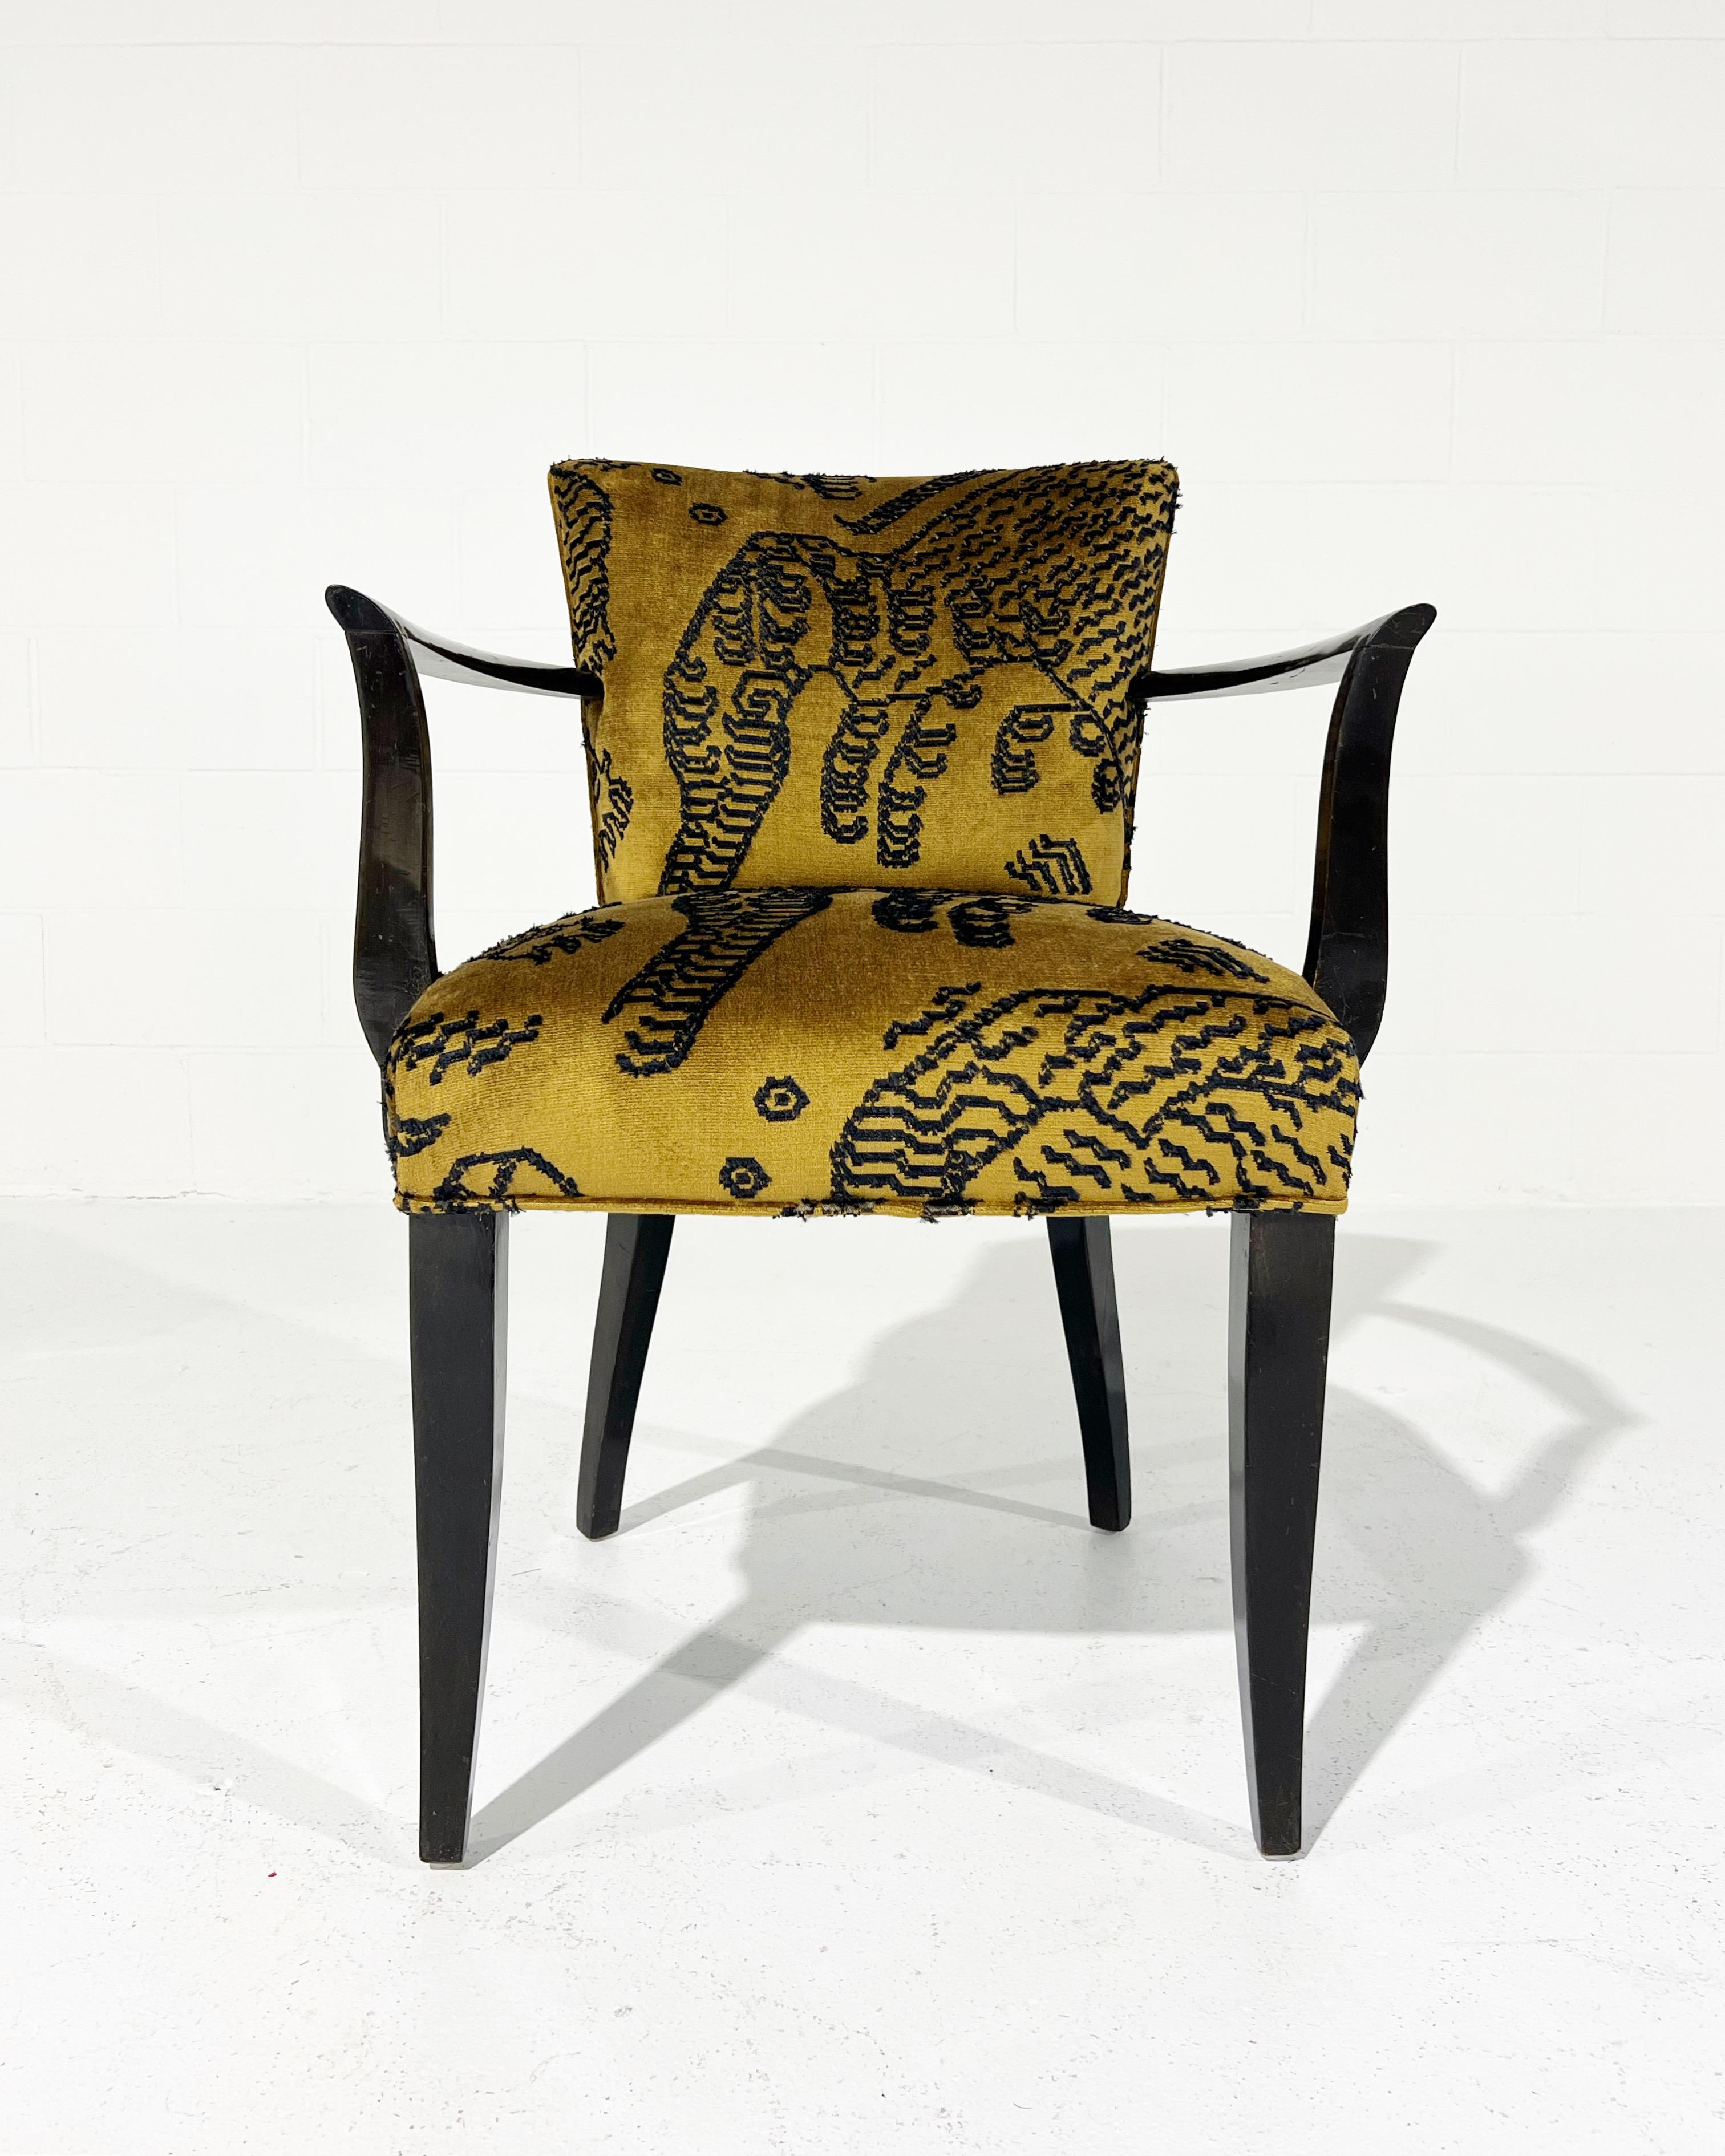 Eugene Printz war ein französischer Designer, der vor allem für seine bahnbrechenden Sitzmöbel aus Holz bekannt ist. Printz' Werk zeichnet sich besonders durch die Verbindung von Edelhölzern mit einer modularen und progressiven Designästhetik aus,